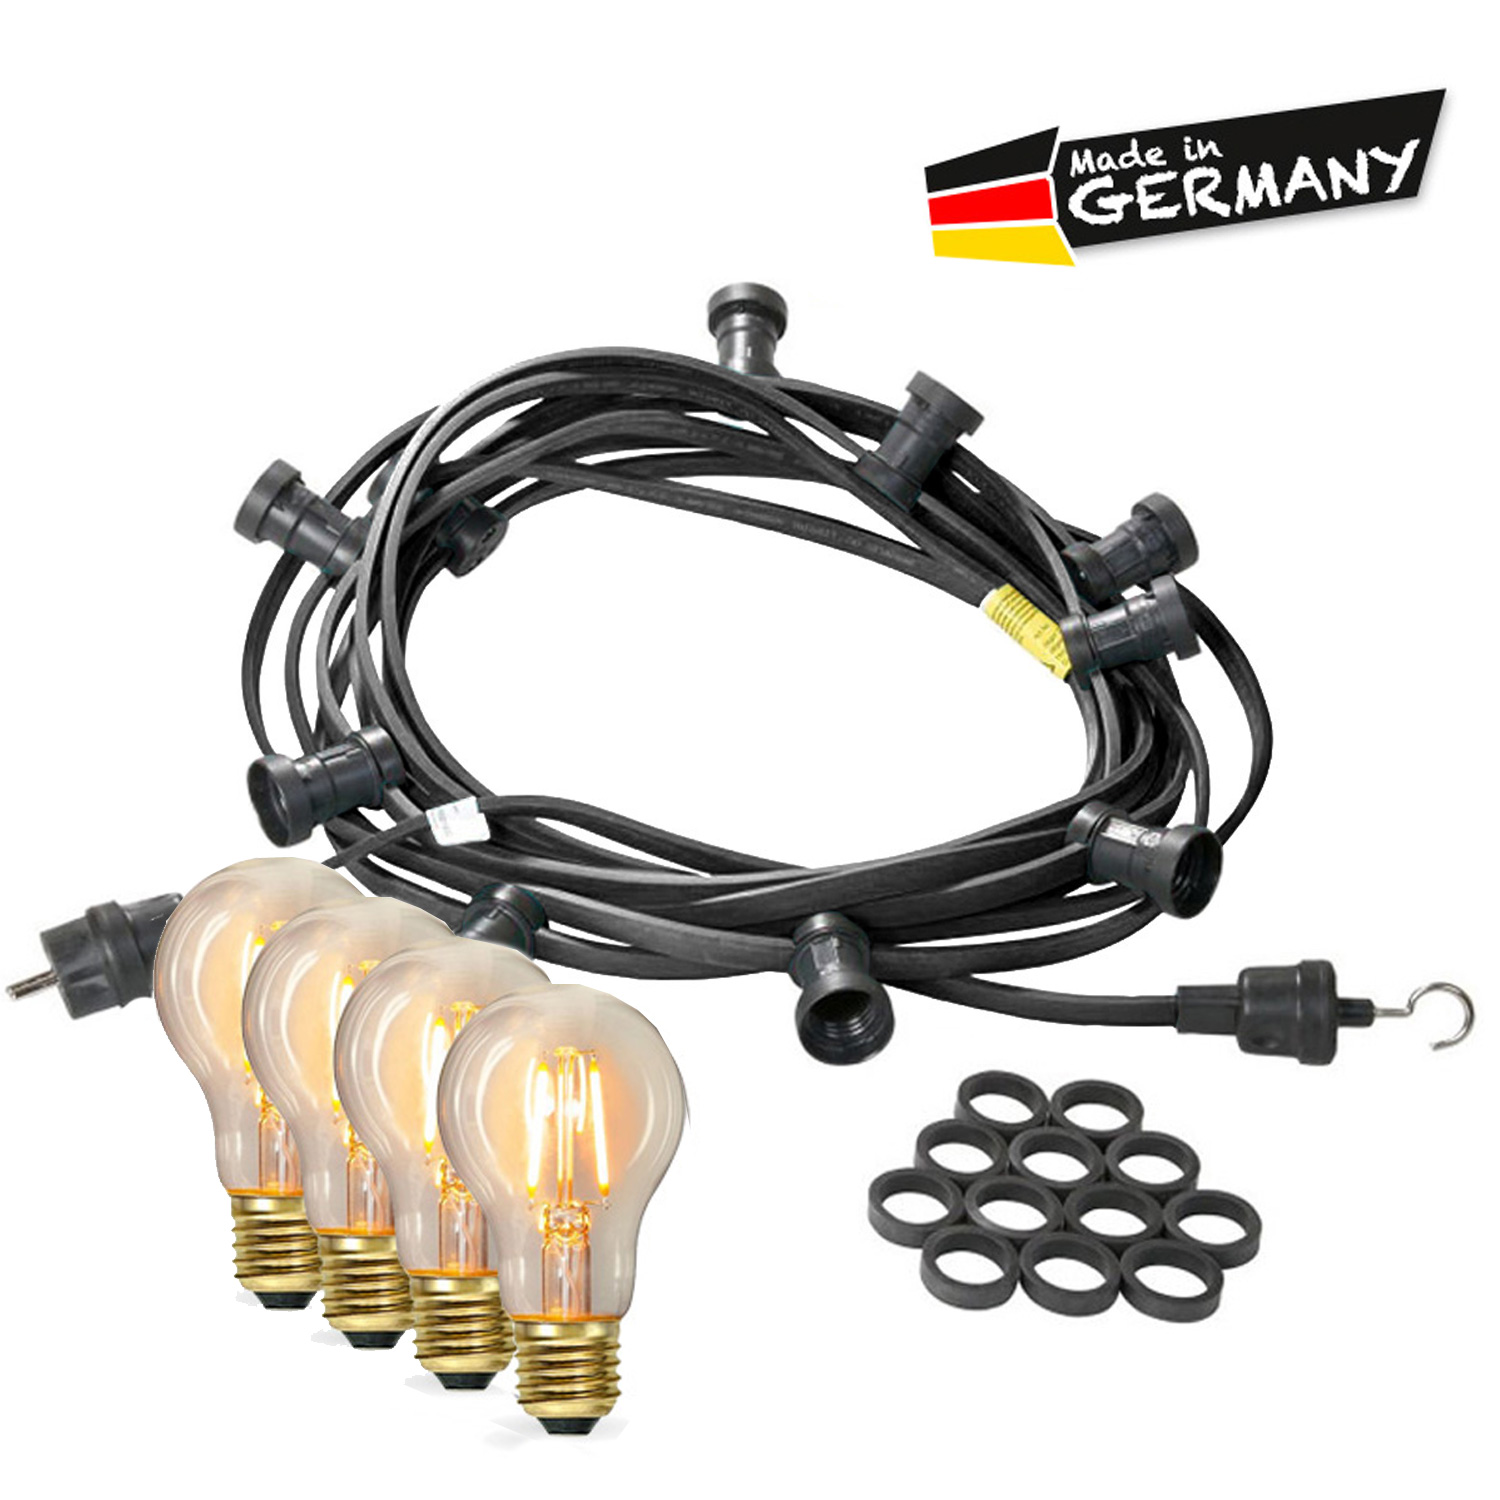 Illu-/Partylichterkette 50m - Außenlichterkette - Made in Germany - 50 x Edison LED Filamentlampen